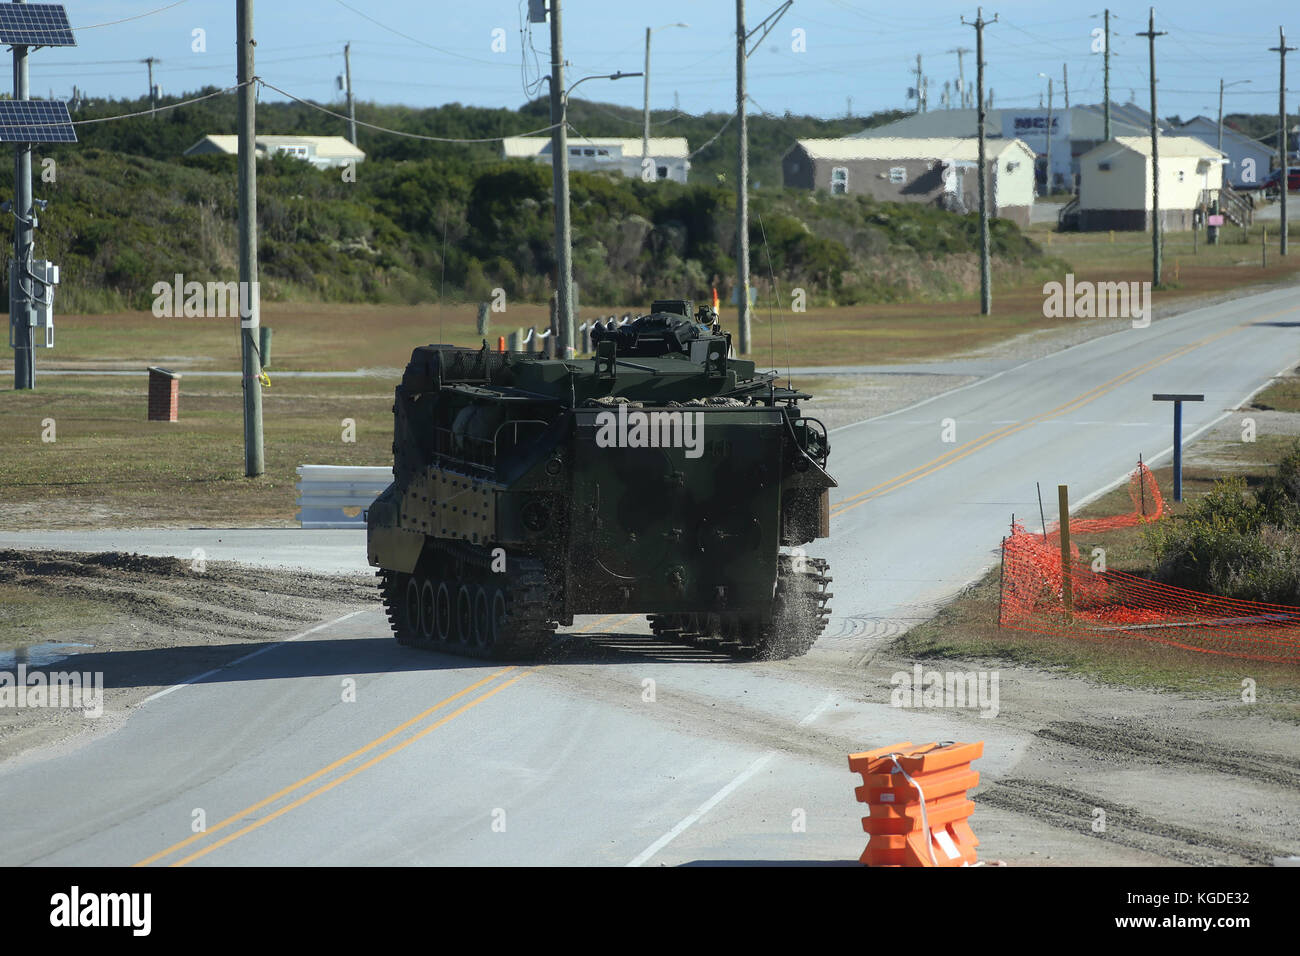 L'AAV-P7/A1 assault véhicule amphibie (AAV) traverse la route pour attendre l'arrivée d'autres AAVs lors d'un exercice d'entraînement à Camp Lejeune, N.C., Oc Banque D'Images